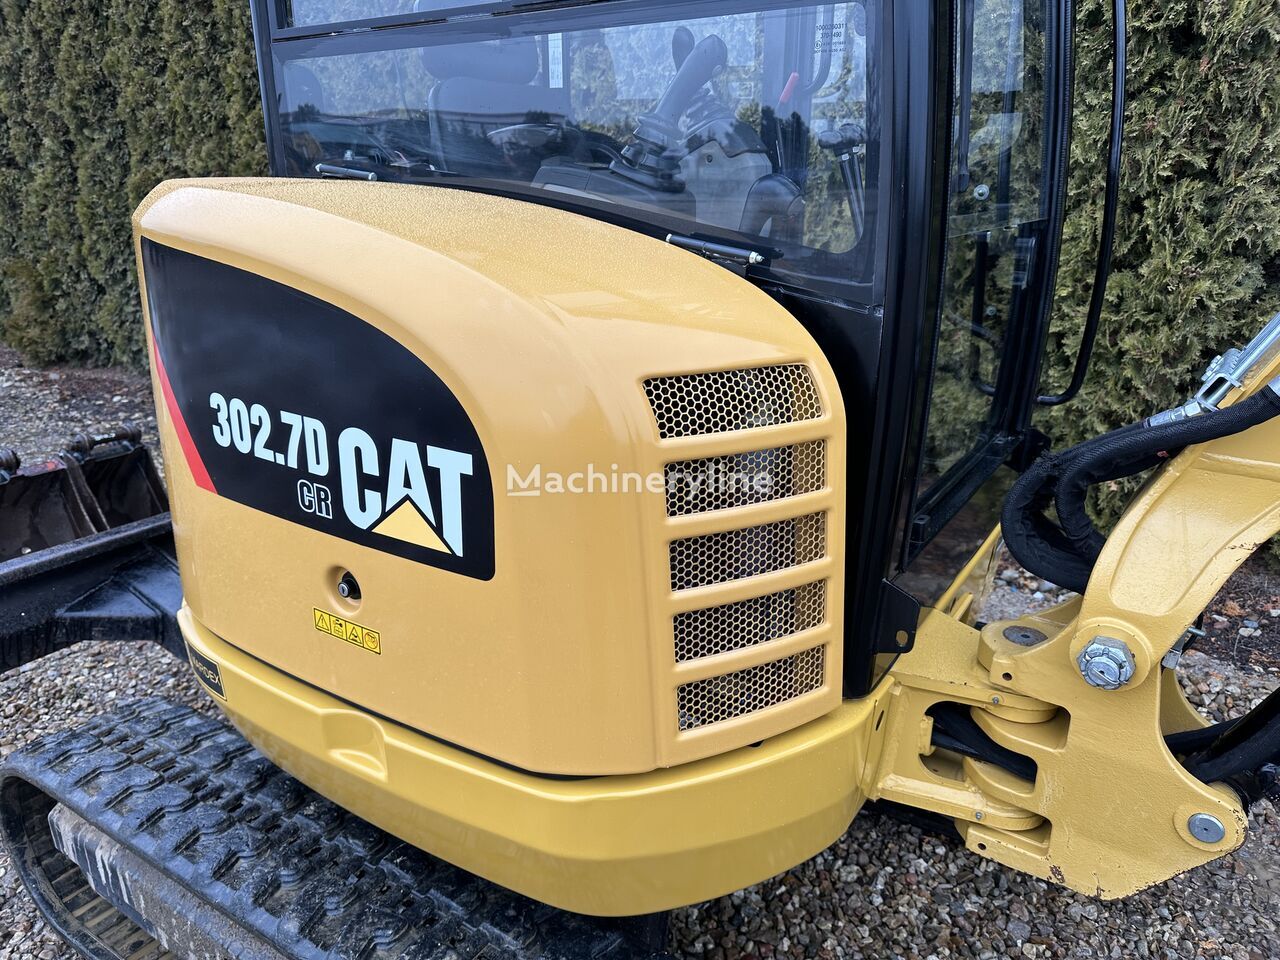 Mini excavator Caterpillar 302.7D CR: picture 16